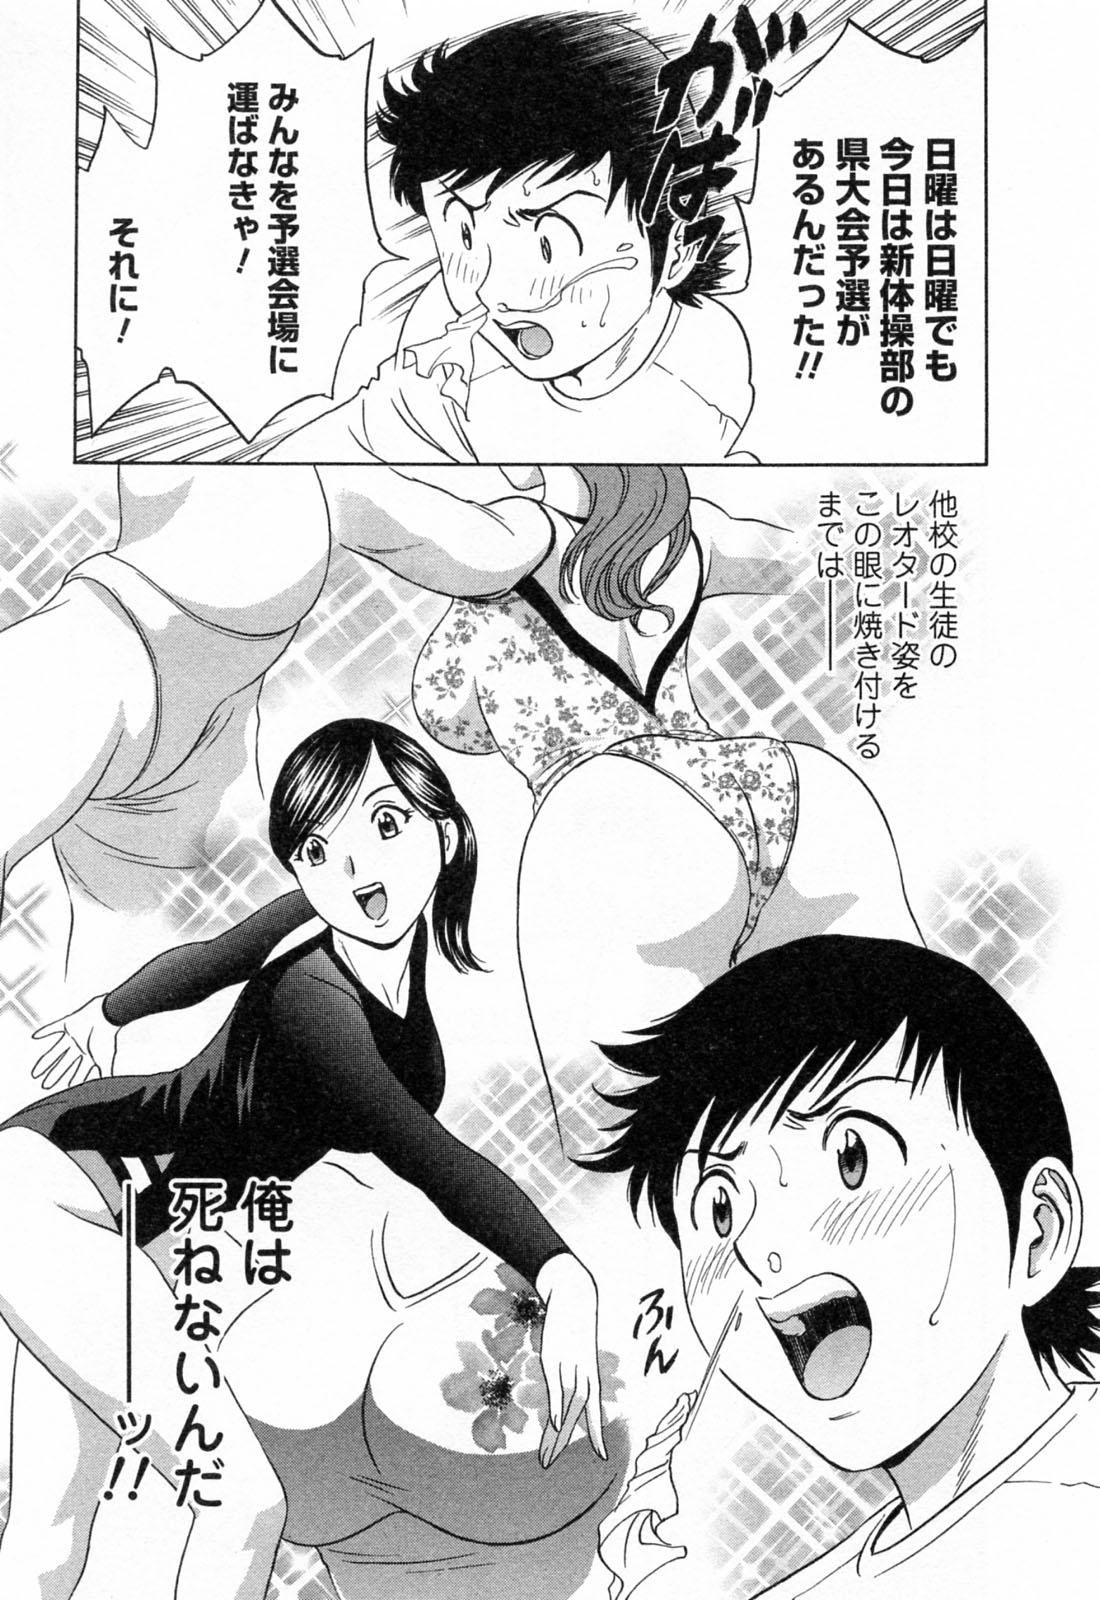 [Hidemaru] Mo-Retsu! Boin Sensei (Boing Boing Teacher) Vol.4 36